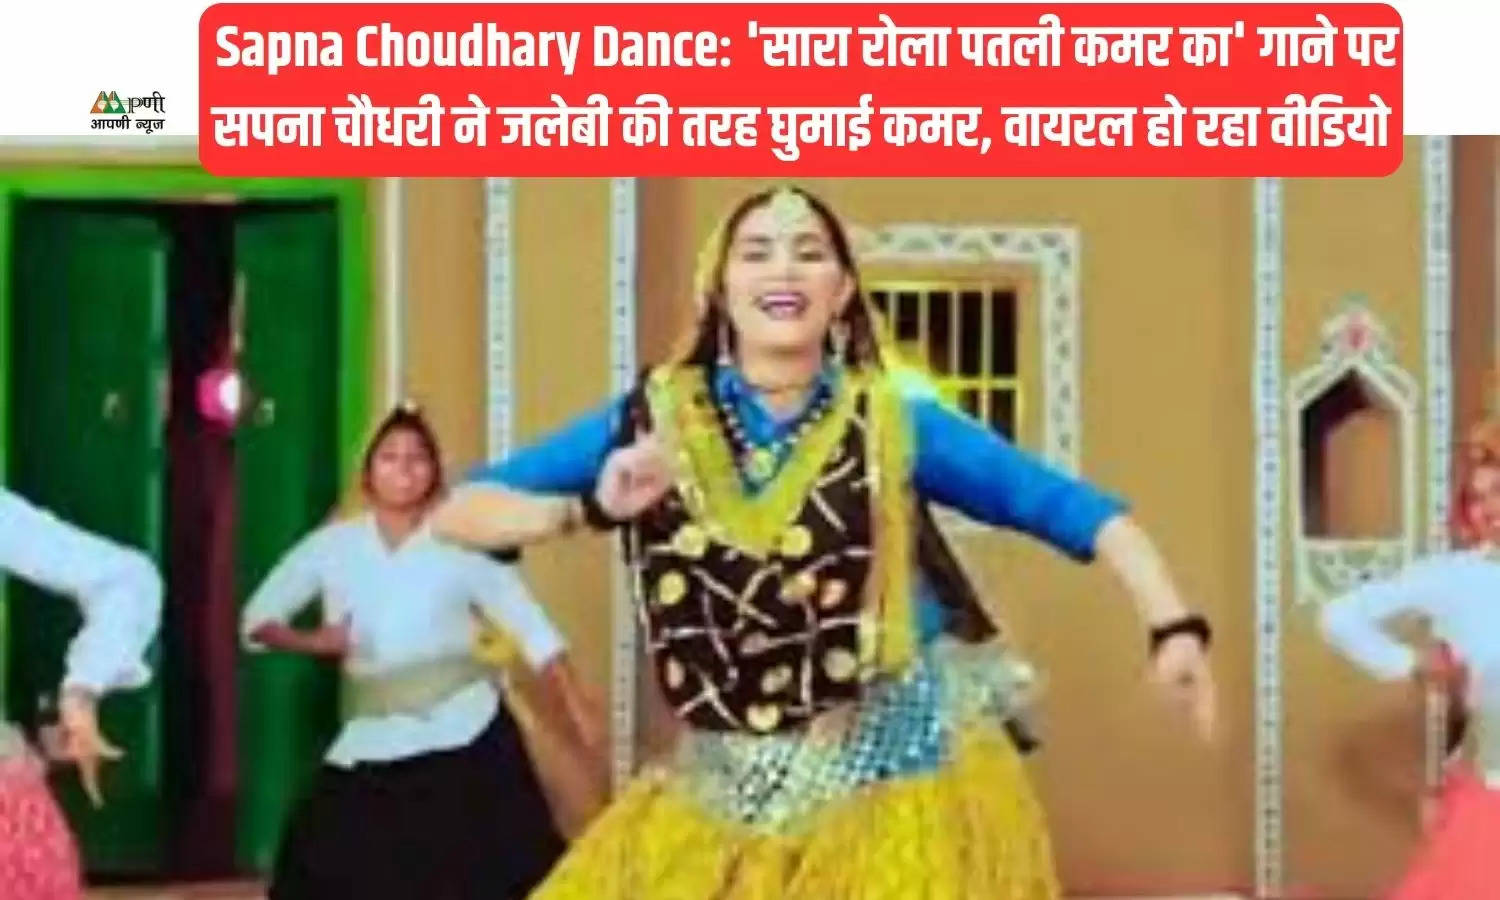  Sapna Choudhary Dance: 'सारा रोला पतली कमर का' गाने पर सपना चौधरी ने जलेबी की तरह घुमाई कमर, वायरल हो रहा वीडियो